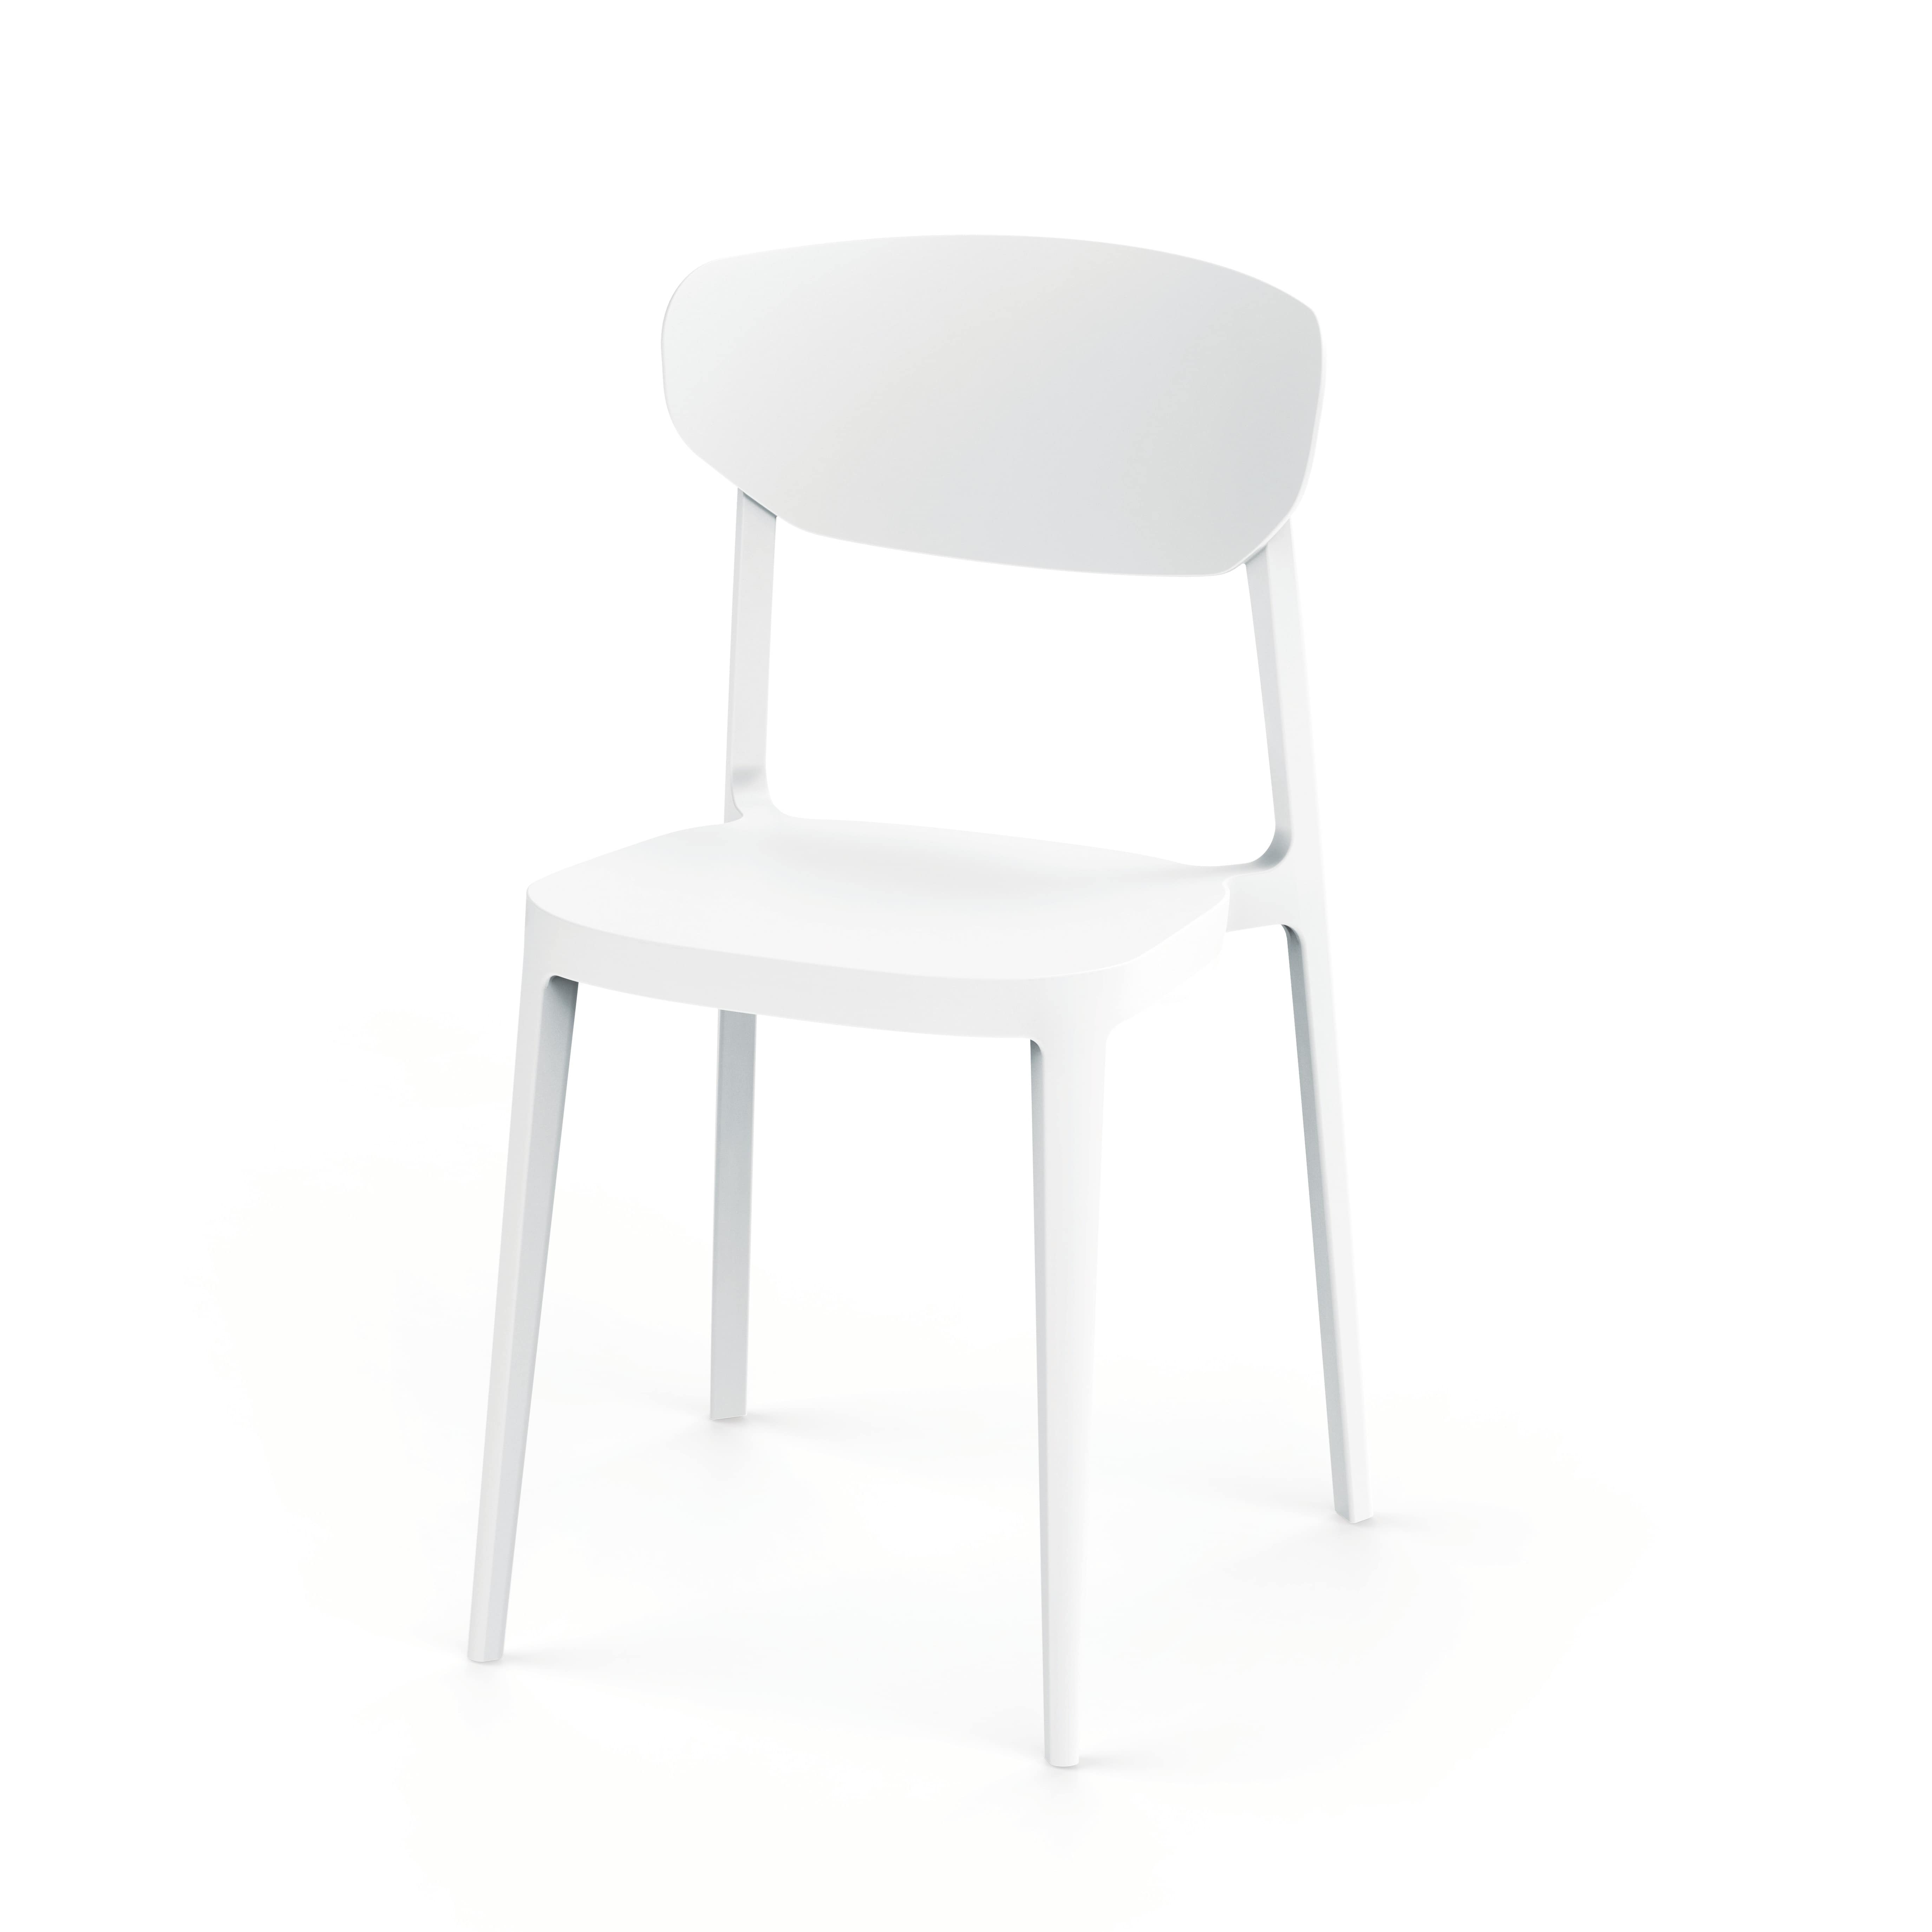 Chaise blanche en plastique empilable.